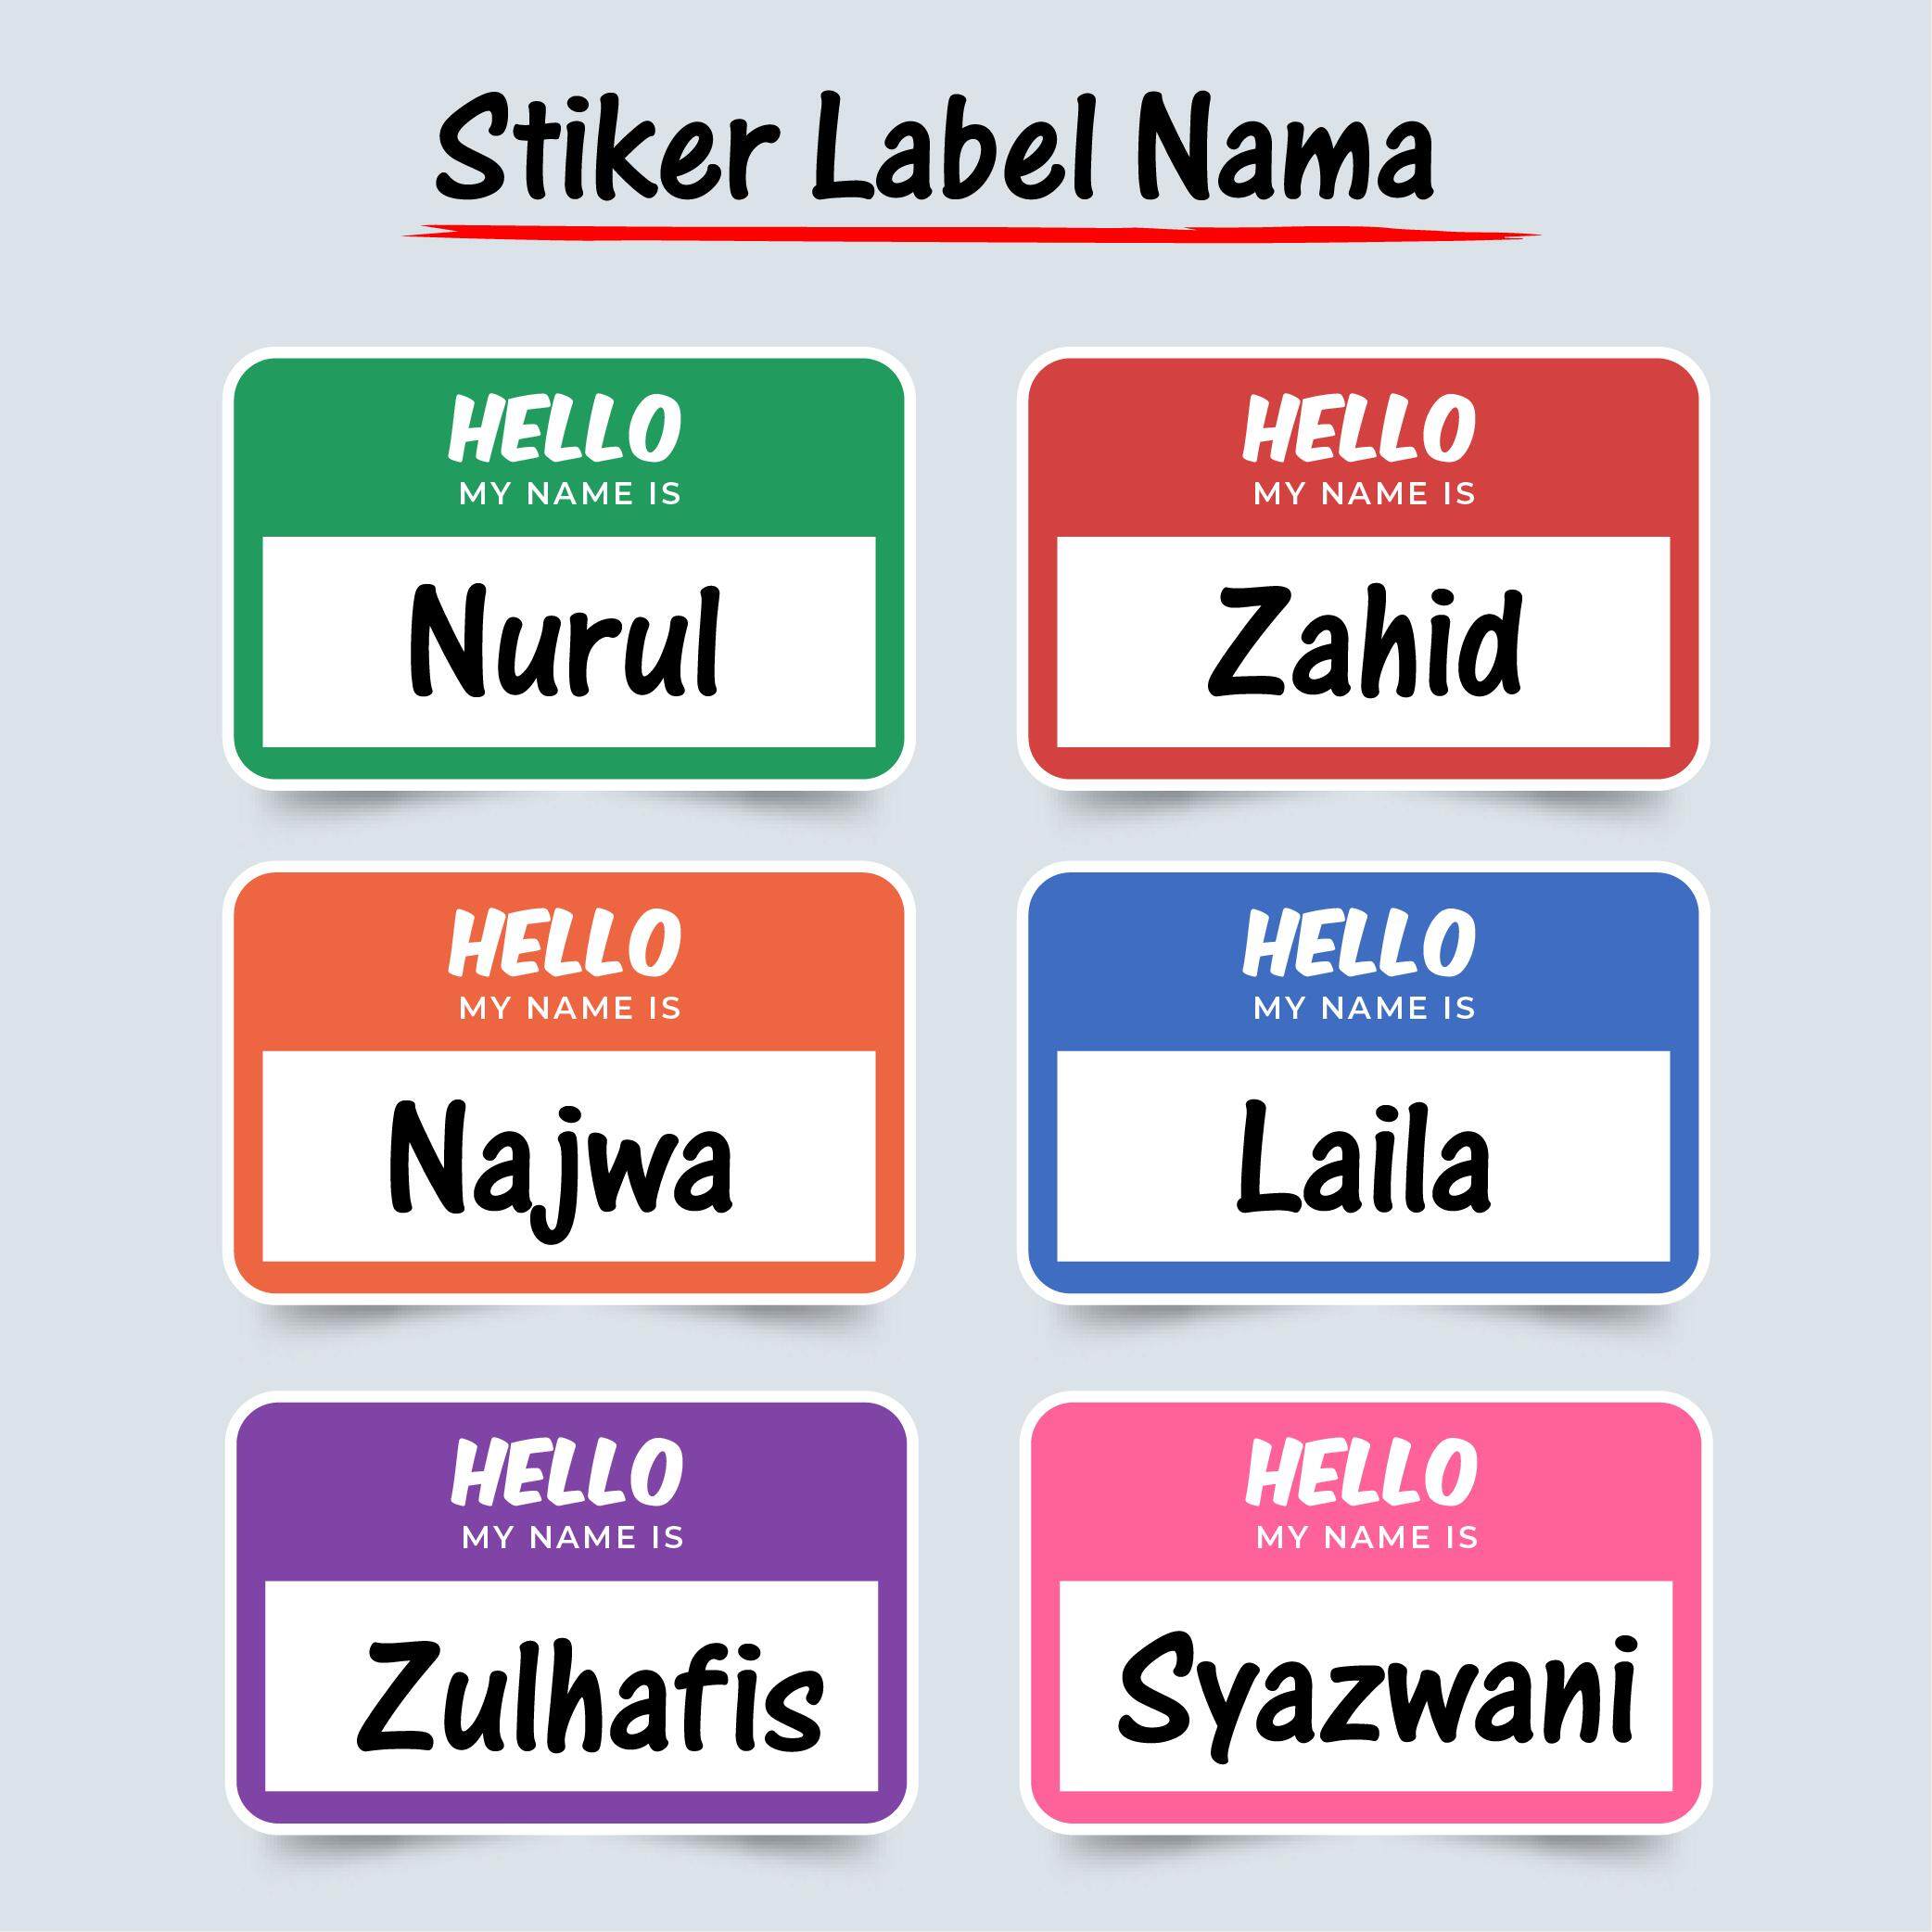 Sticker Label Nama